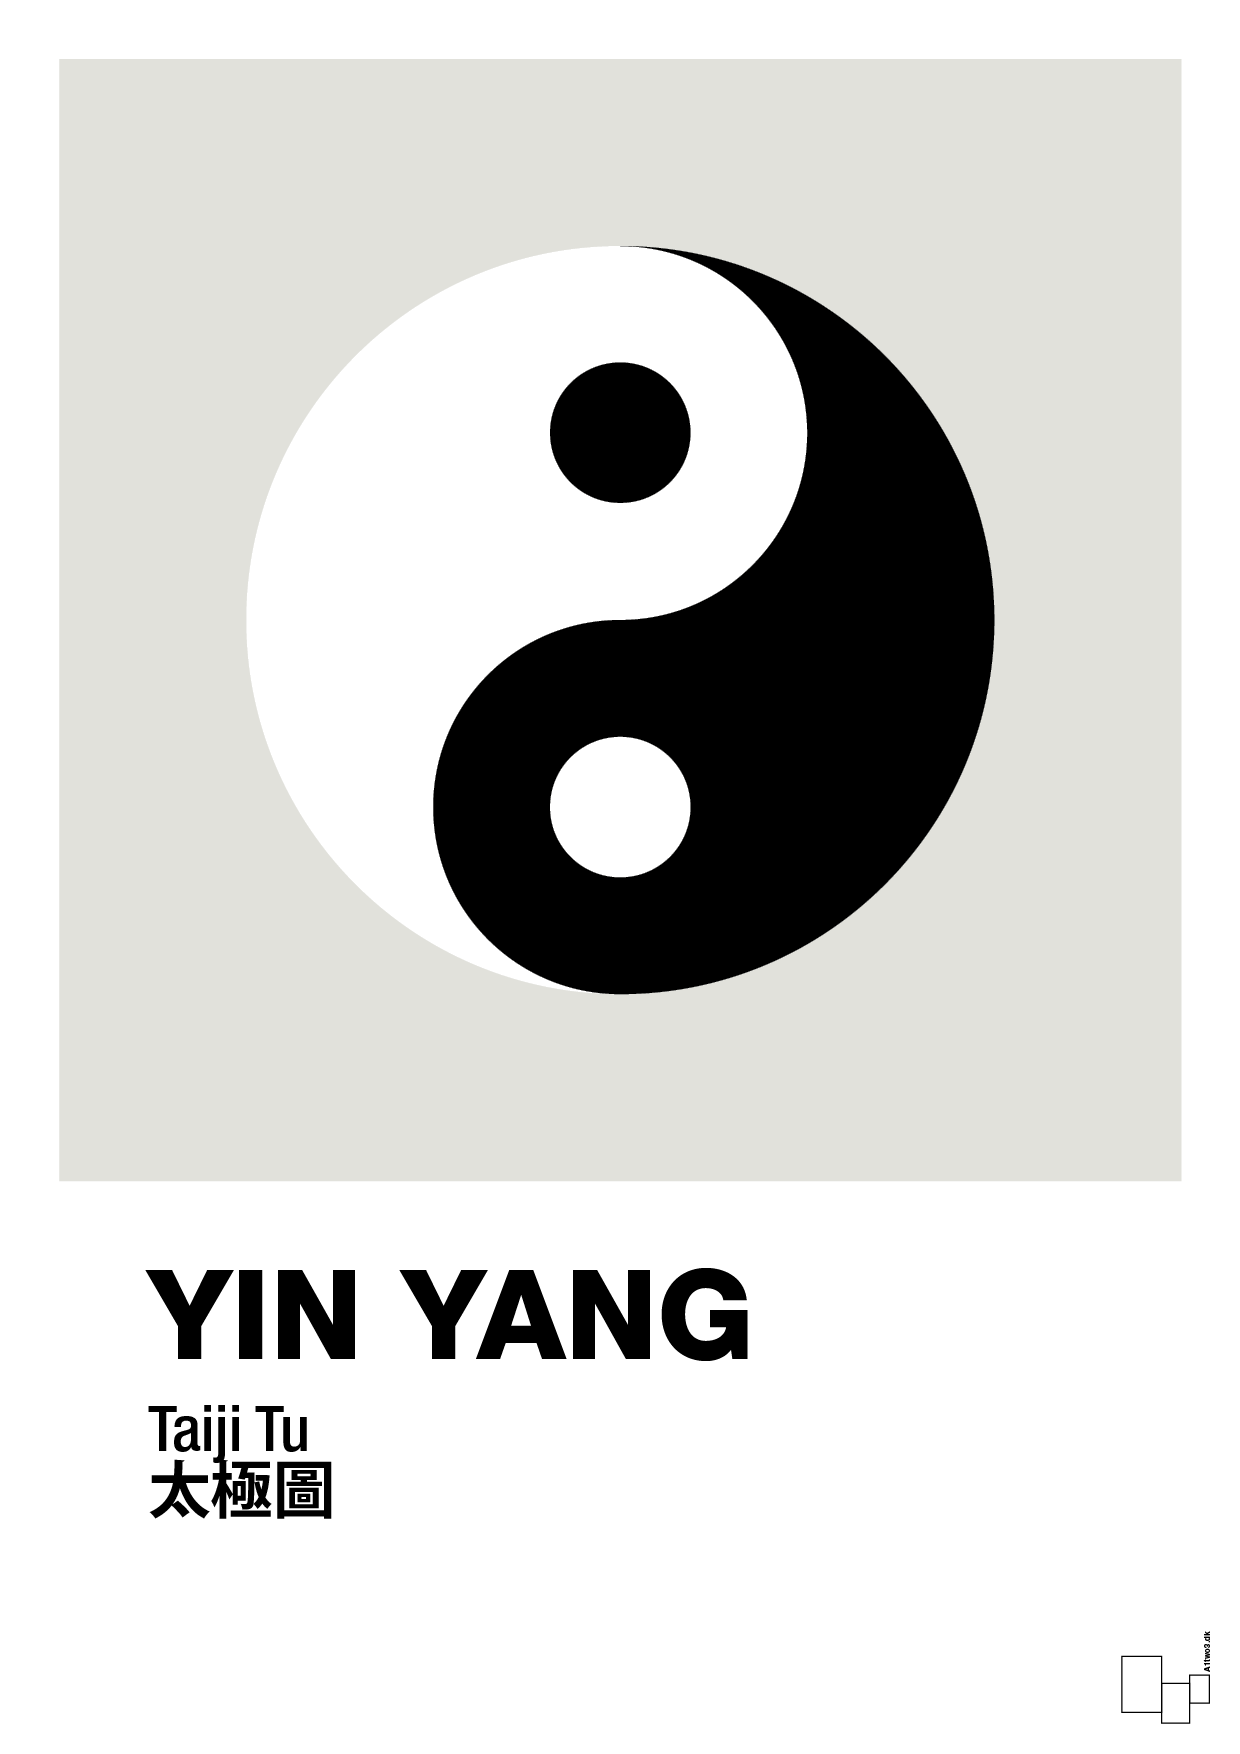 yin yang - Plakat med Videnskab i Painters White